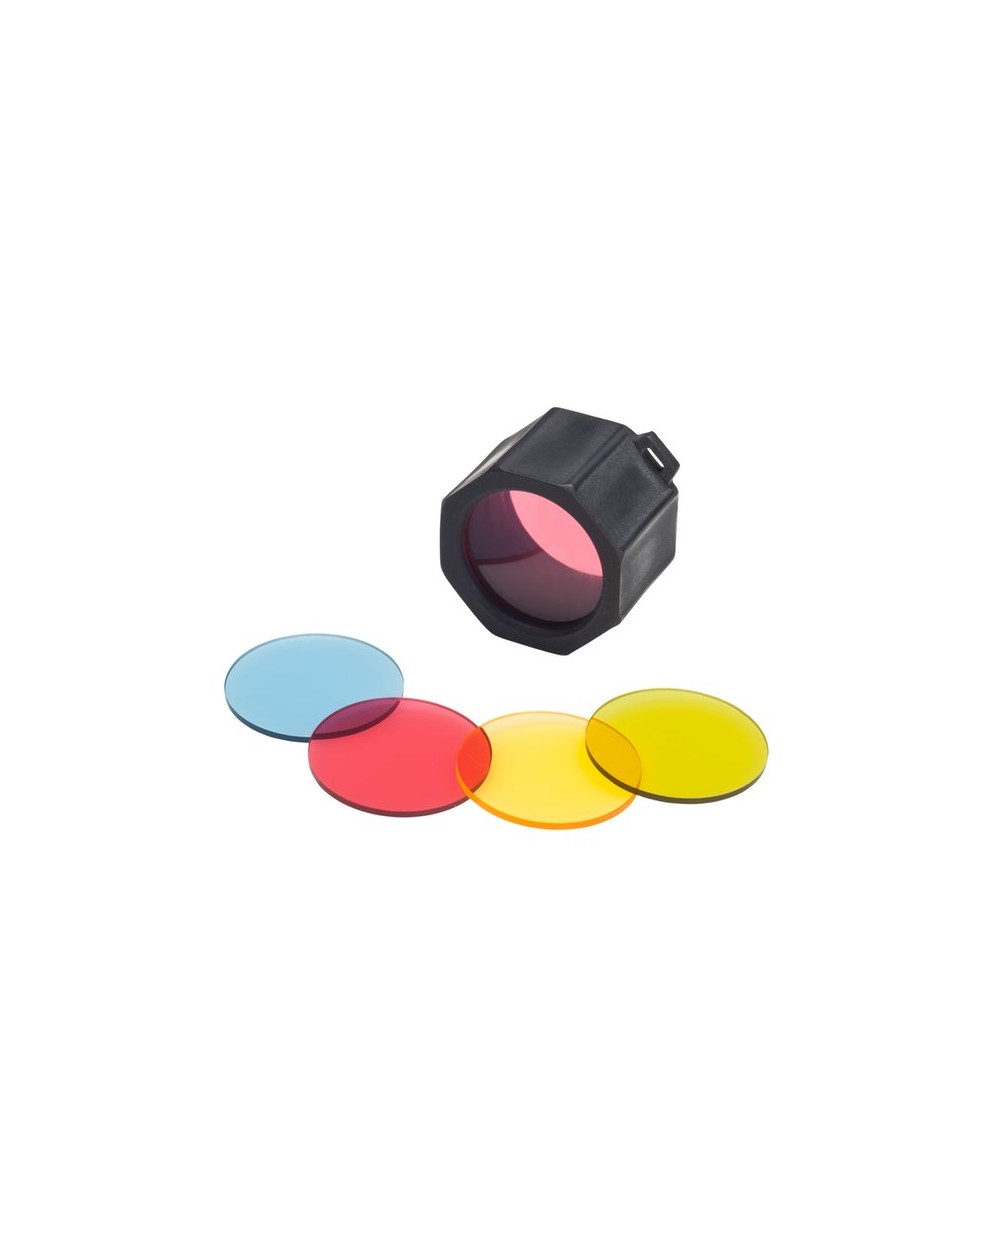 Adaptateur et filtres de couleurs pour votre lampe frontale Q2 Q3 V3 Suprabeam